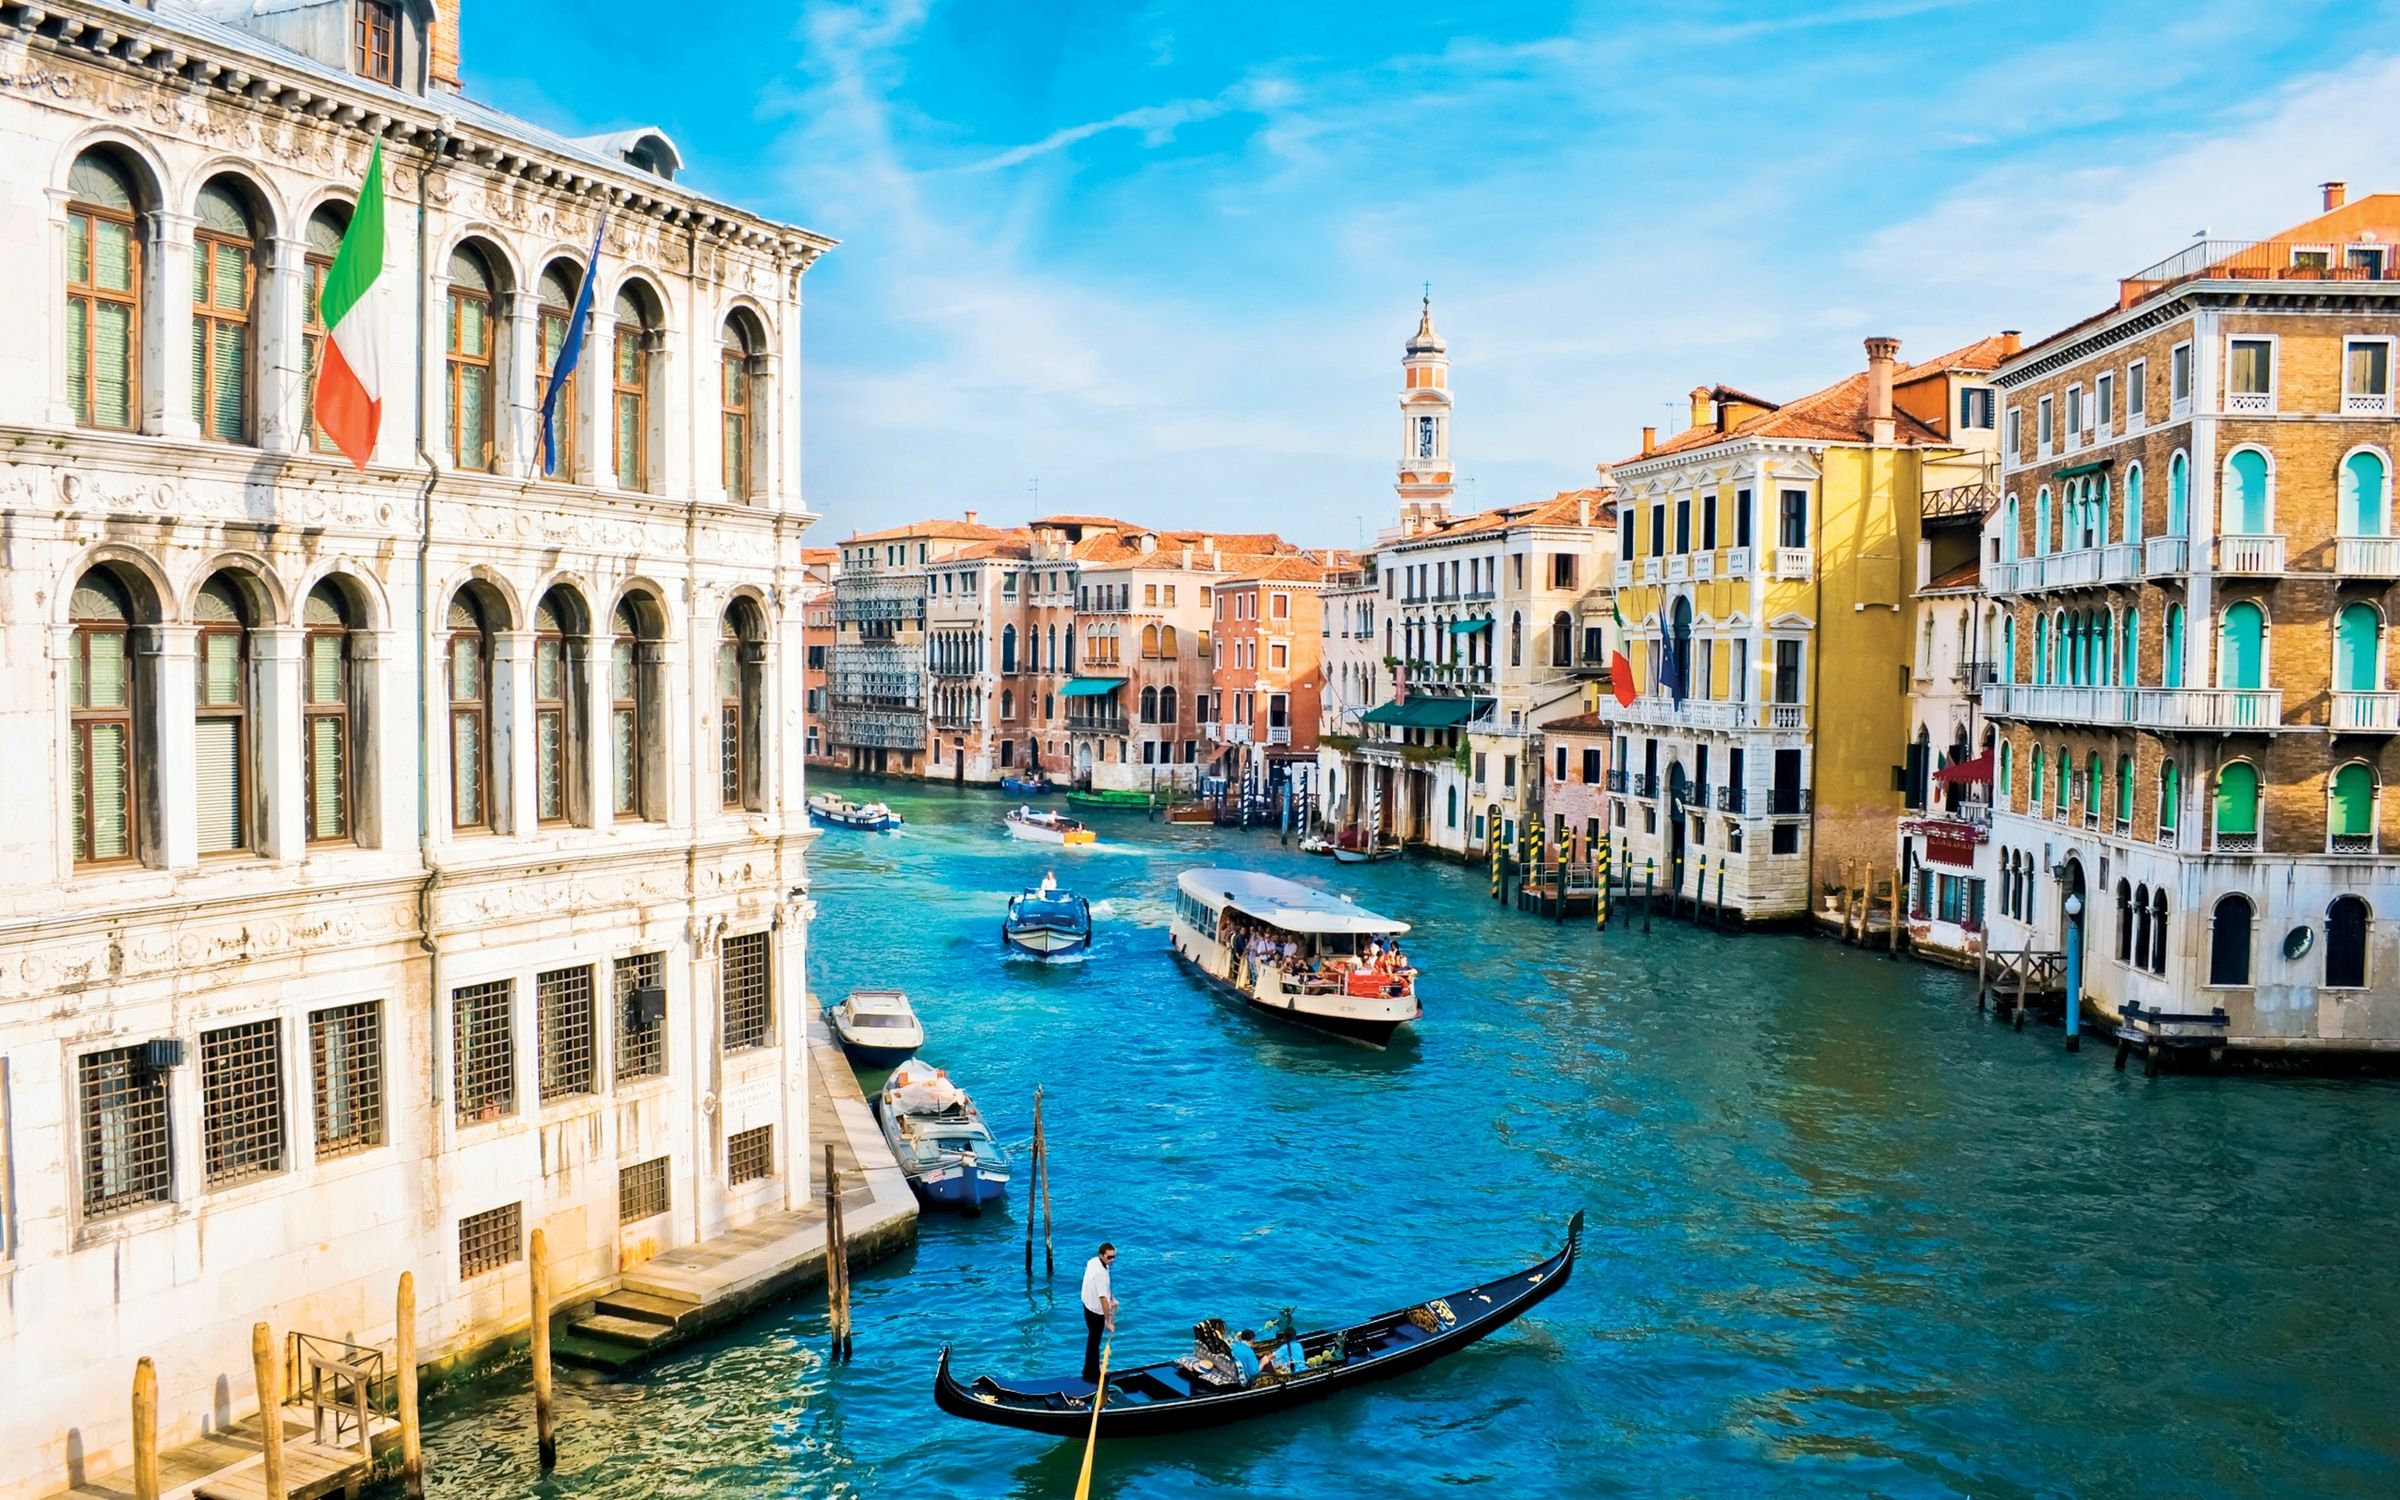 Βενετία: Βάζει εισιτήριο εισόδου στην πόλη – Πόσο θα πρέπει να πληρώνουν οι τουρίστες